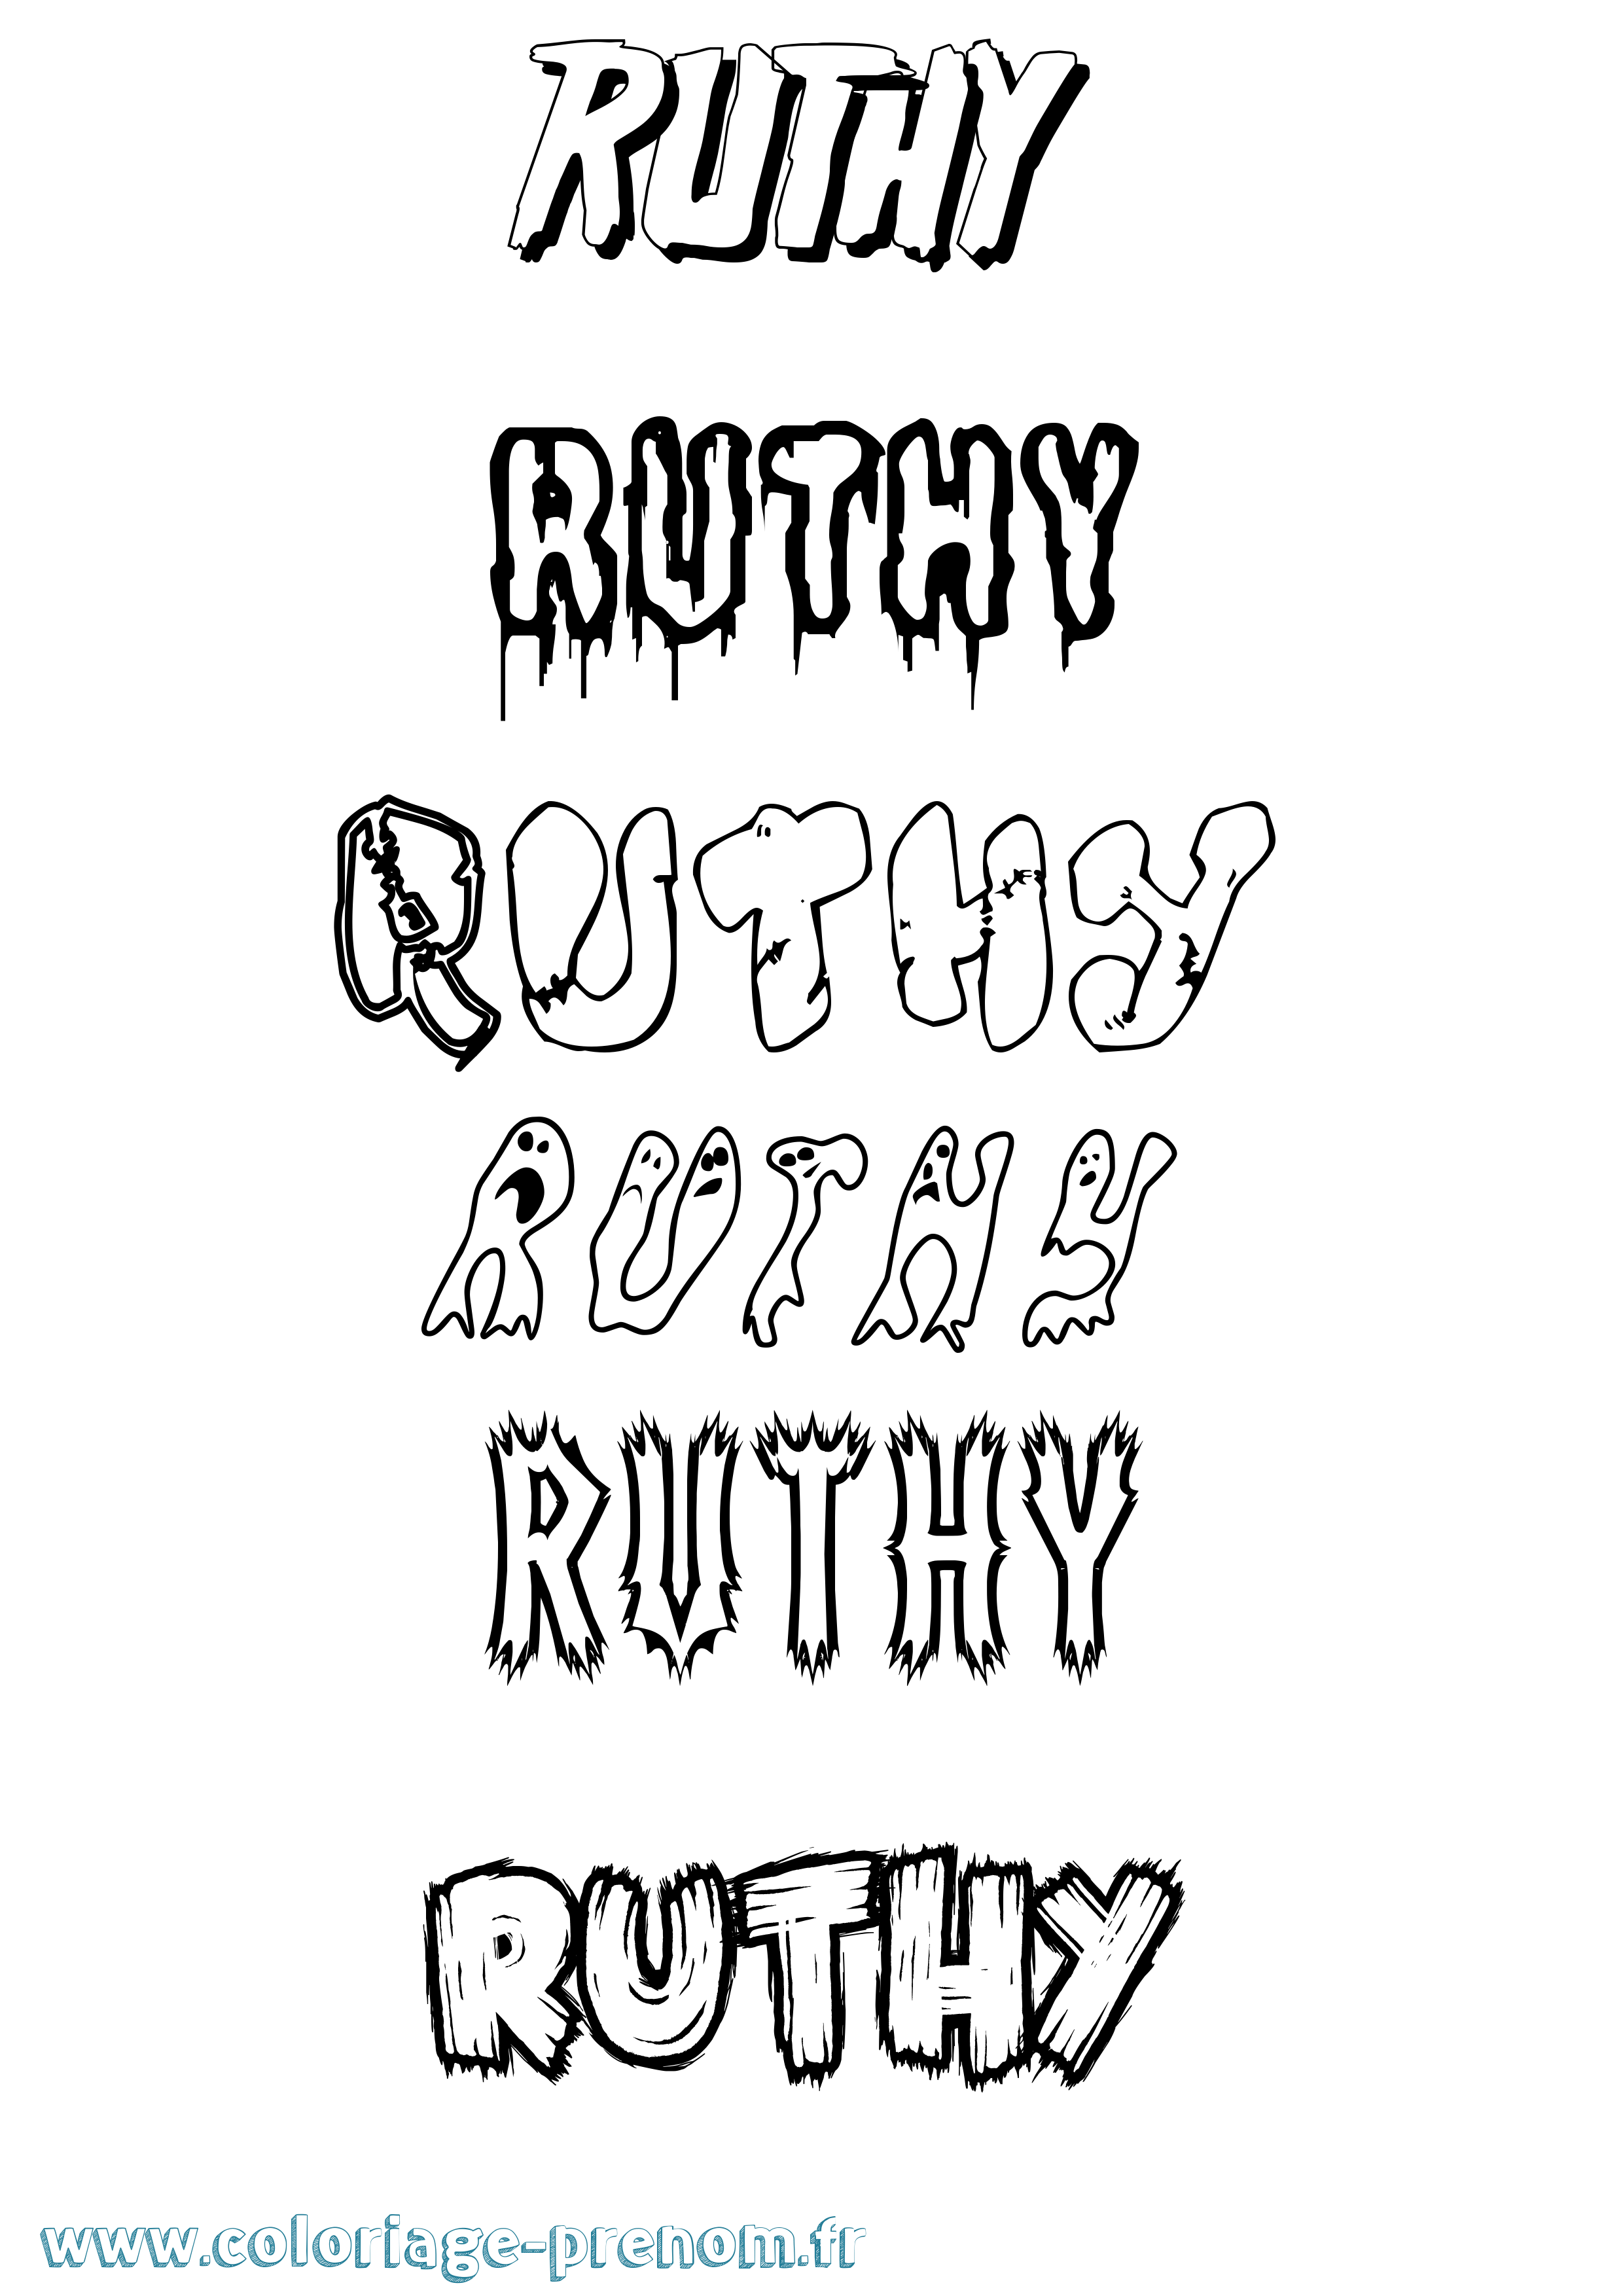 Coloriage prénom Ruthy Frisson